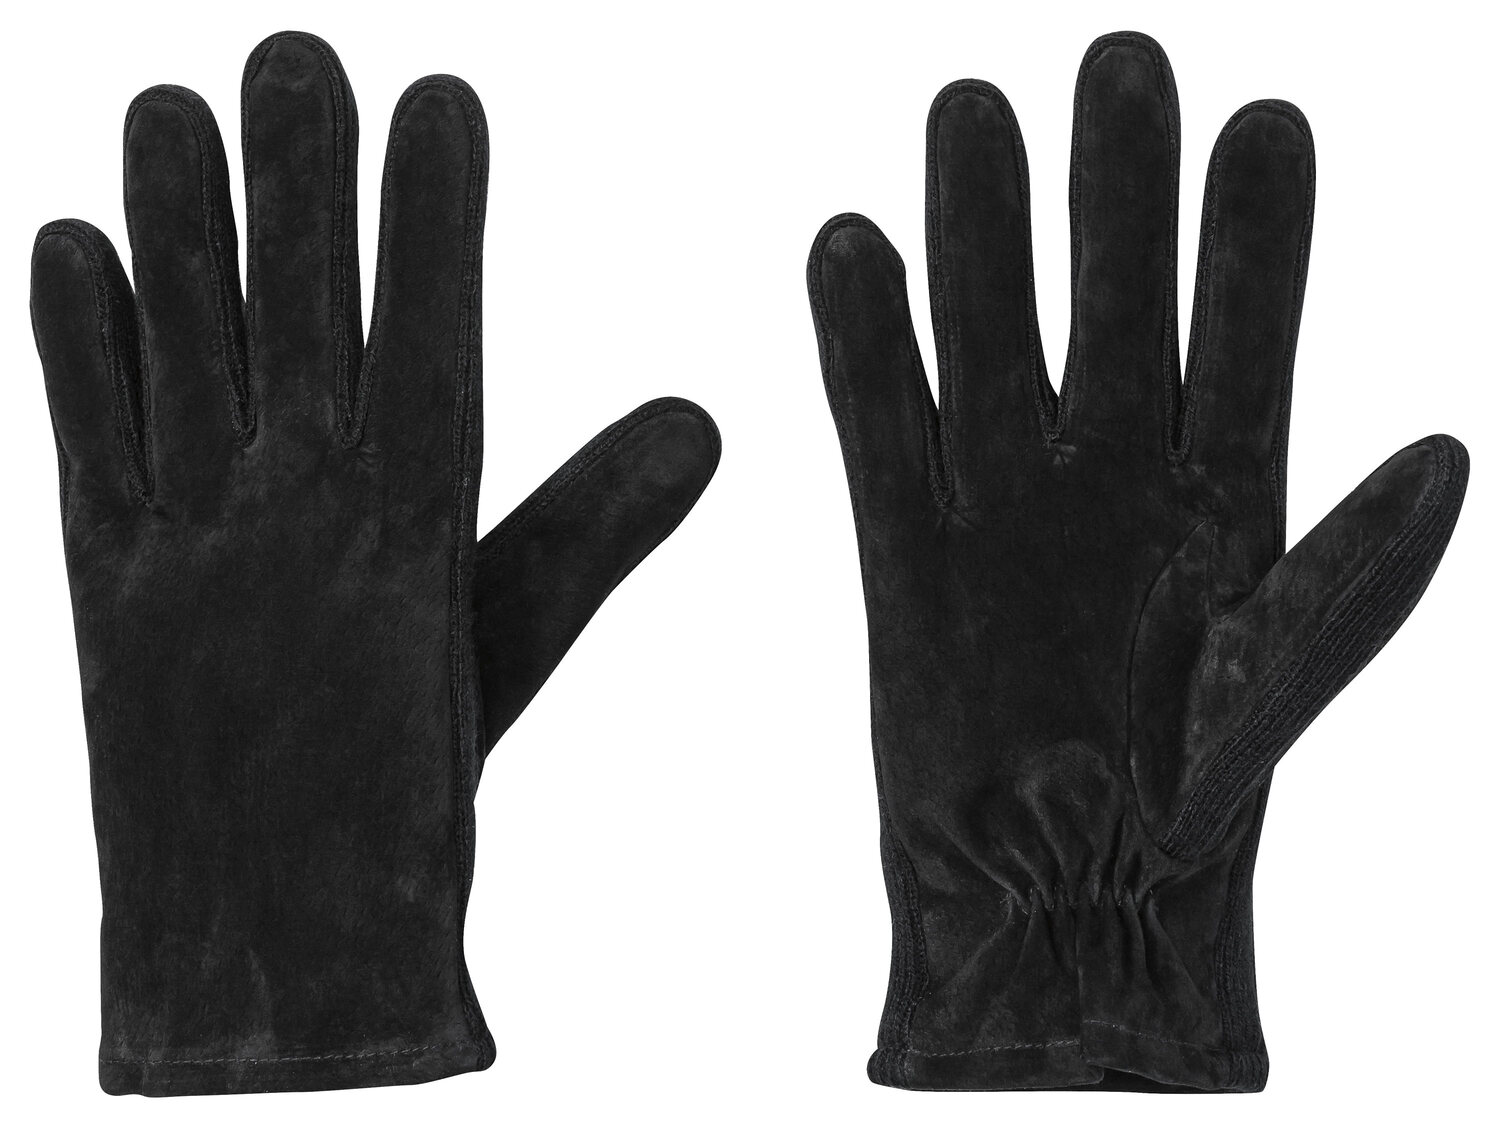 Rękawiczki ze skórą welurową Livergy, cena 24,99 PLN 
2 wzory do wyboru 
- rozmiary: ...